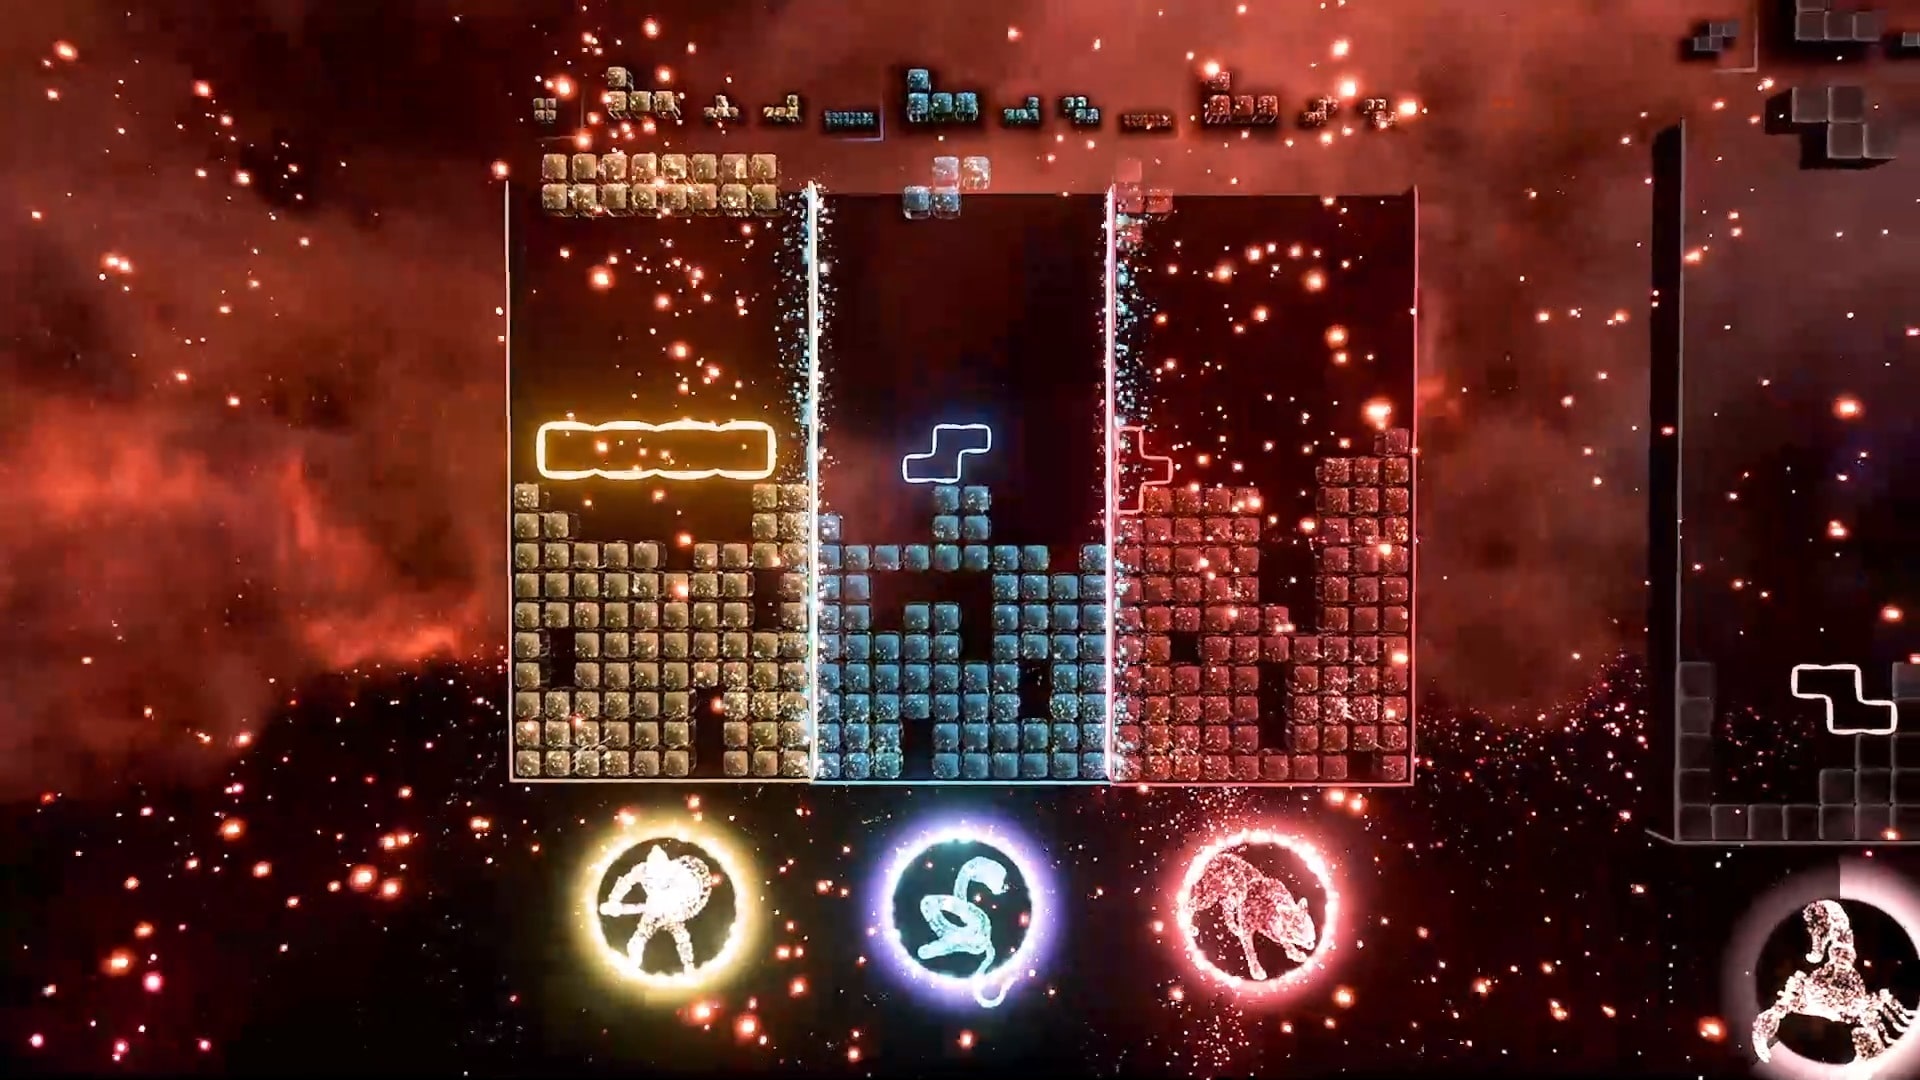 Koop-Gameplay im verbundenen Modus mit Tetris-Effekt